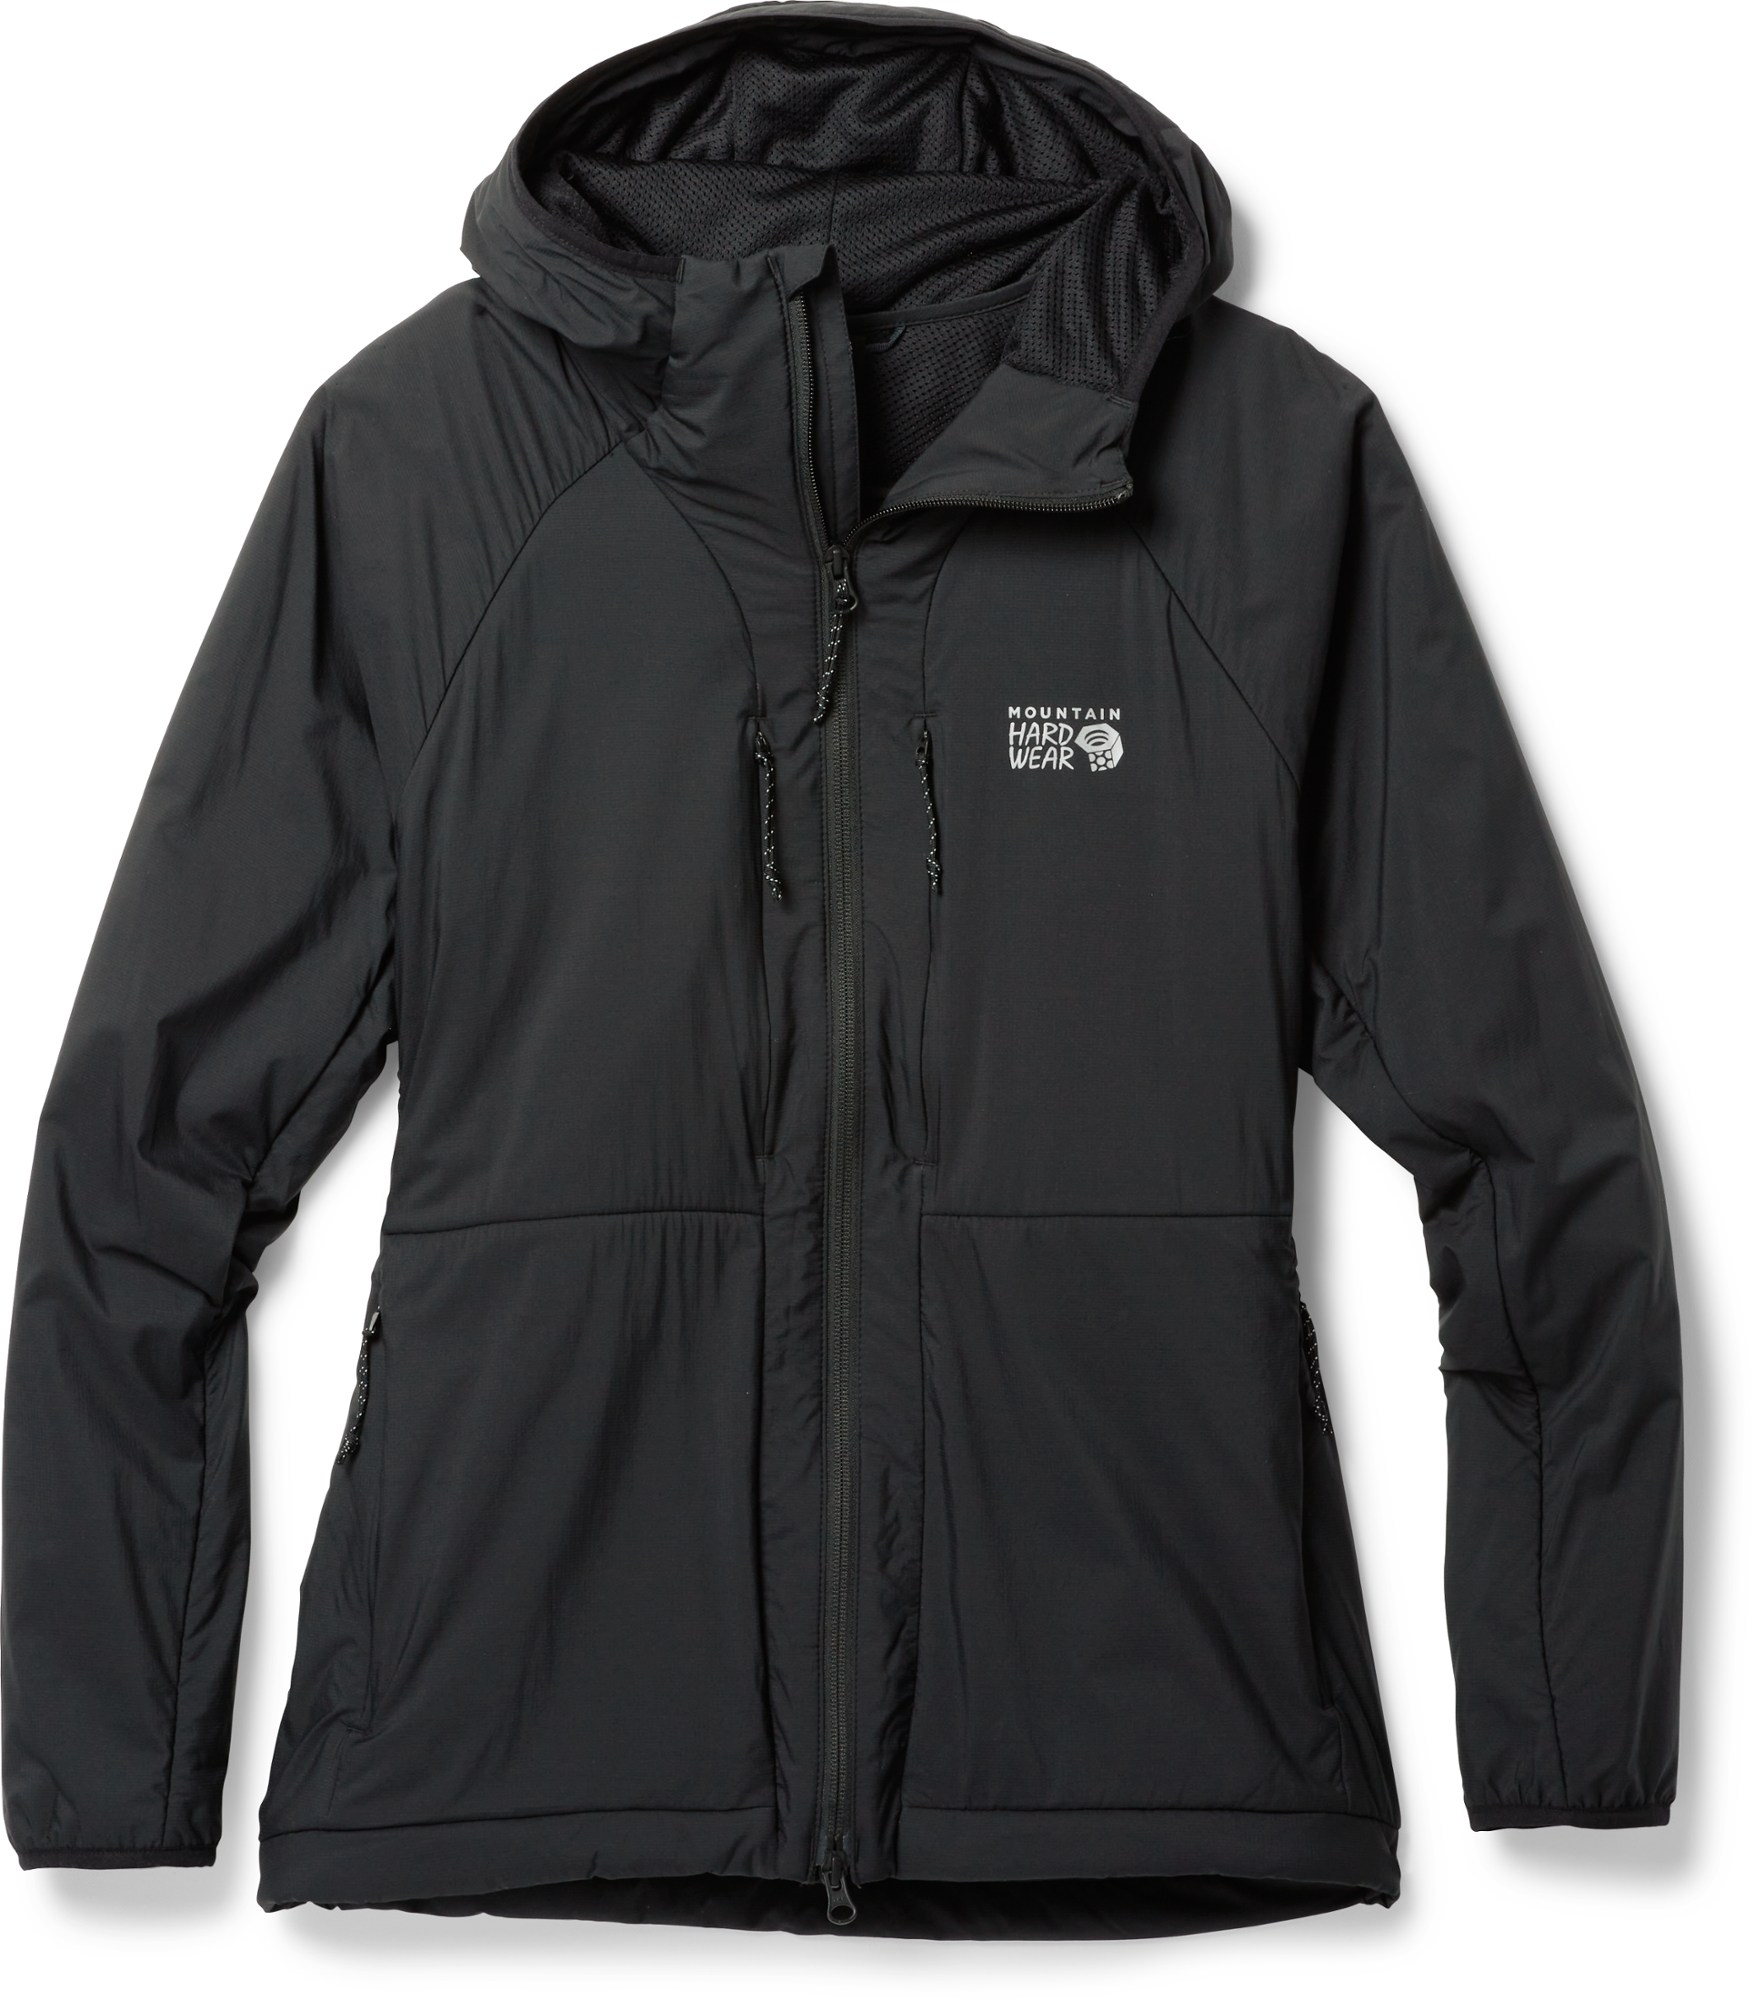 Теплая утепленная куртка Kor AirShell — женская Mountain Hardwear, черный